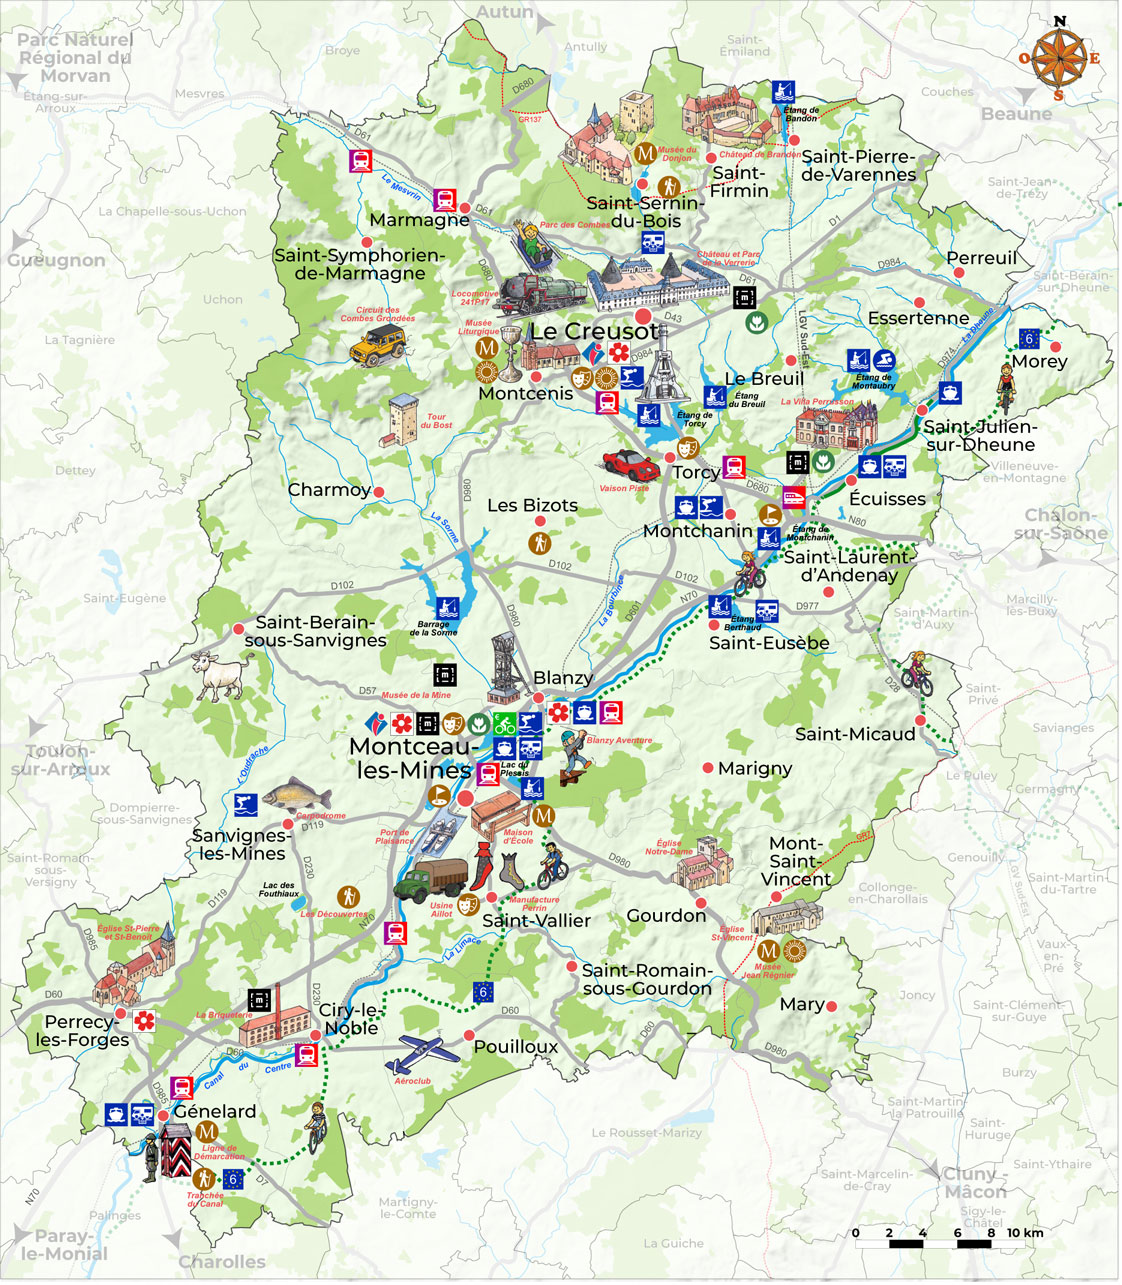 Creusot Montceau Tourisme - EdiCarto - agence de cartographie spécialisée - Tourisme Loisirs - carte touristique